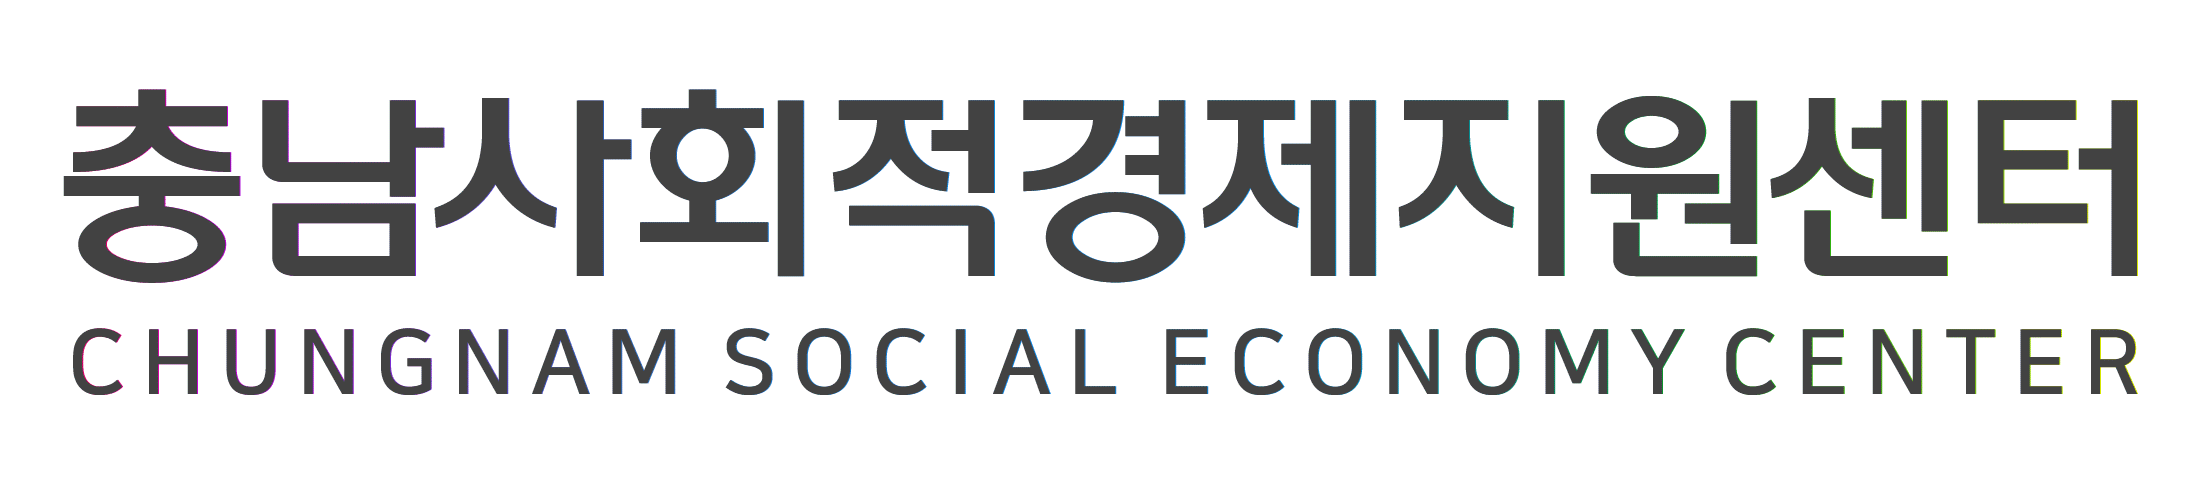 충남사회적경제지원센터